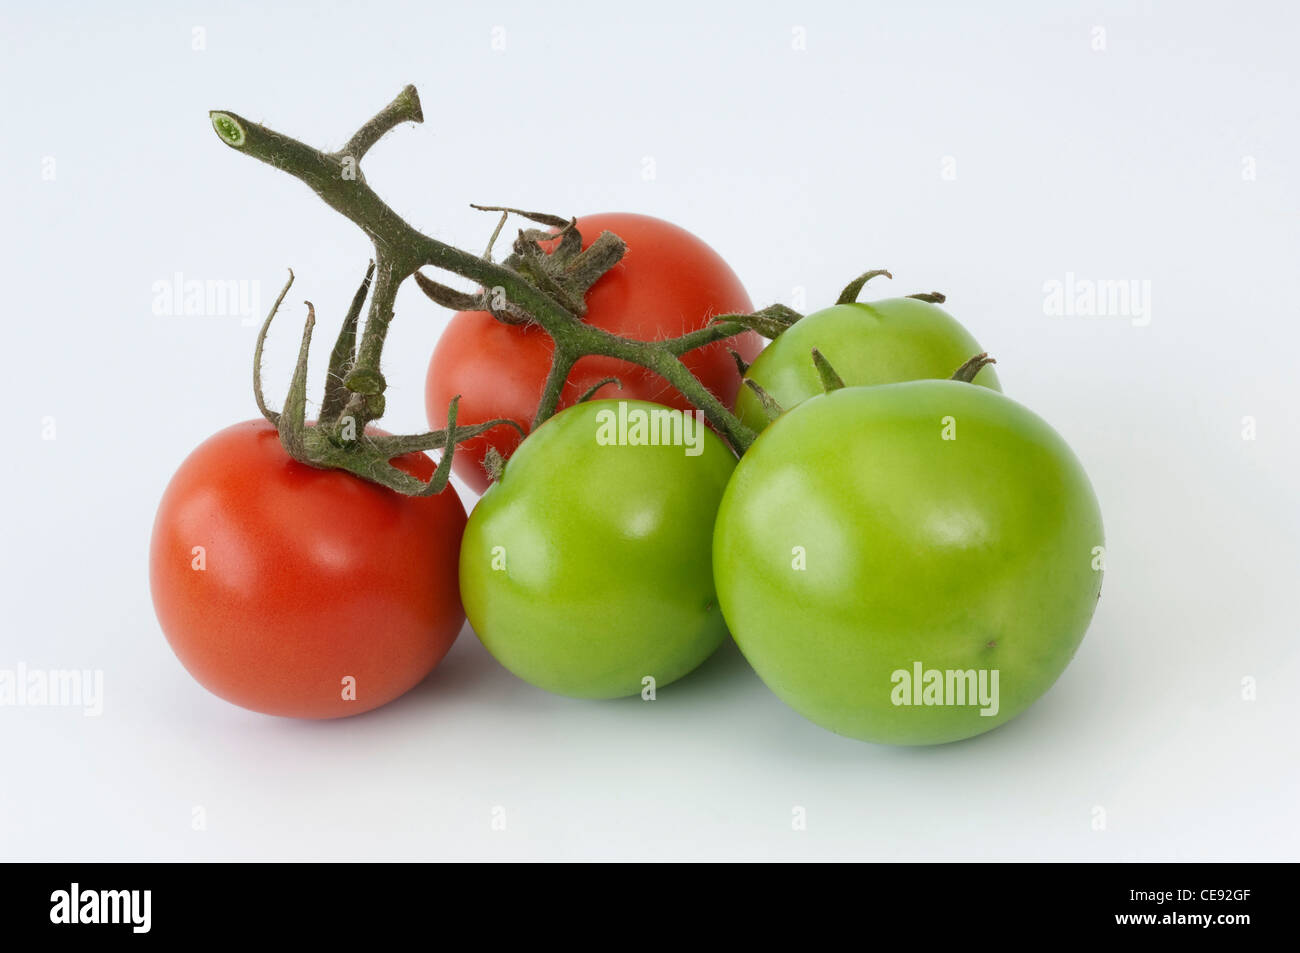 La tomate (Lycopersicon esculentum). Des fruits dans différents stades de maturation. Studio photo sur un fond blanc. Banque D'Images